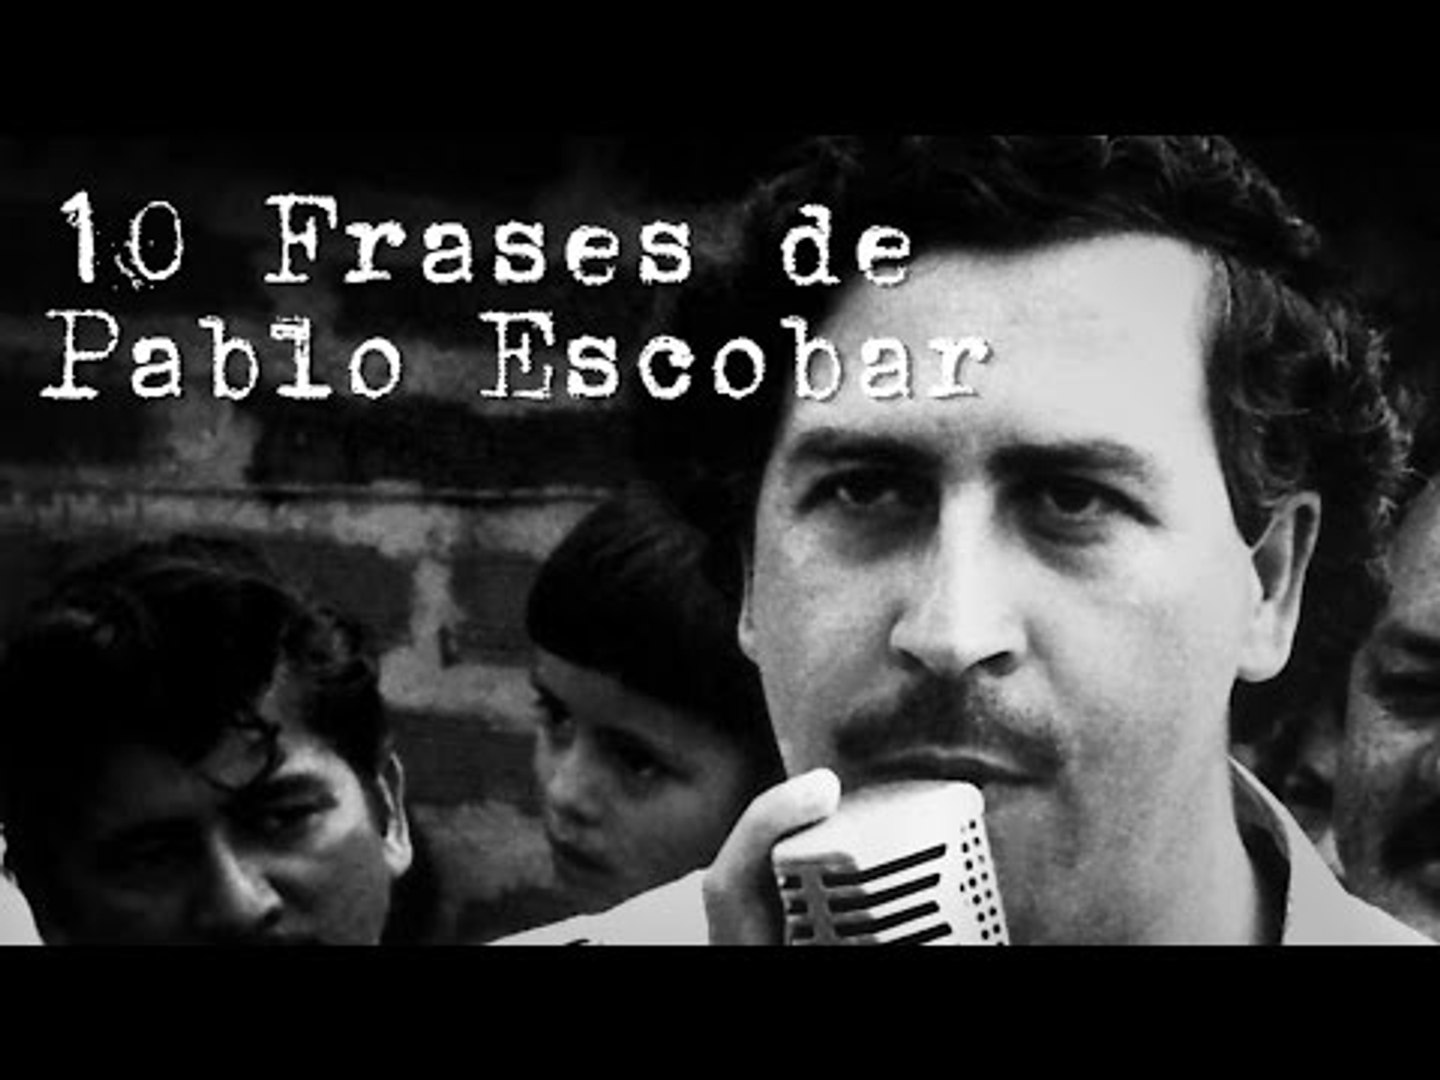 Frases de Pablo Escobar, el patrón de los Narcos - Vídeo Dailymotion